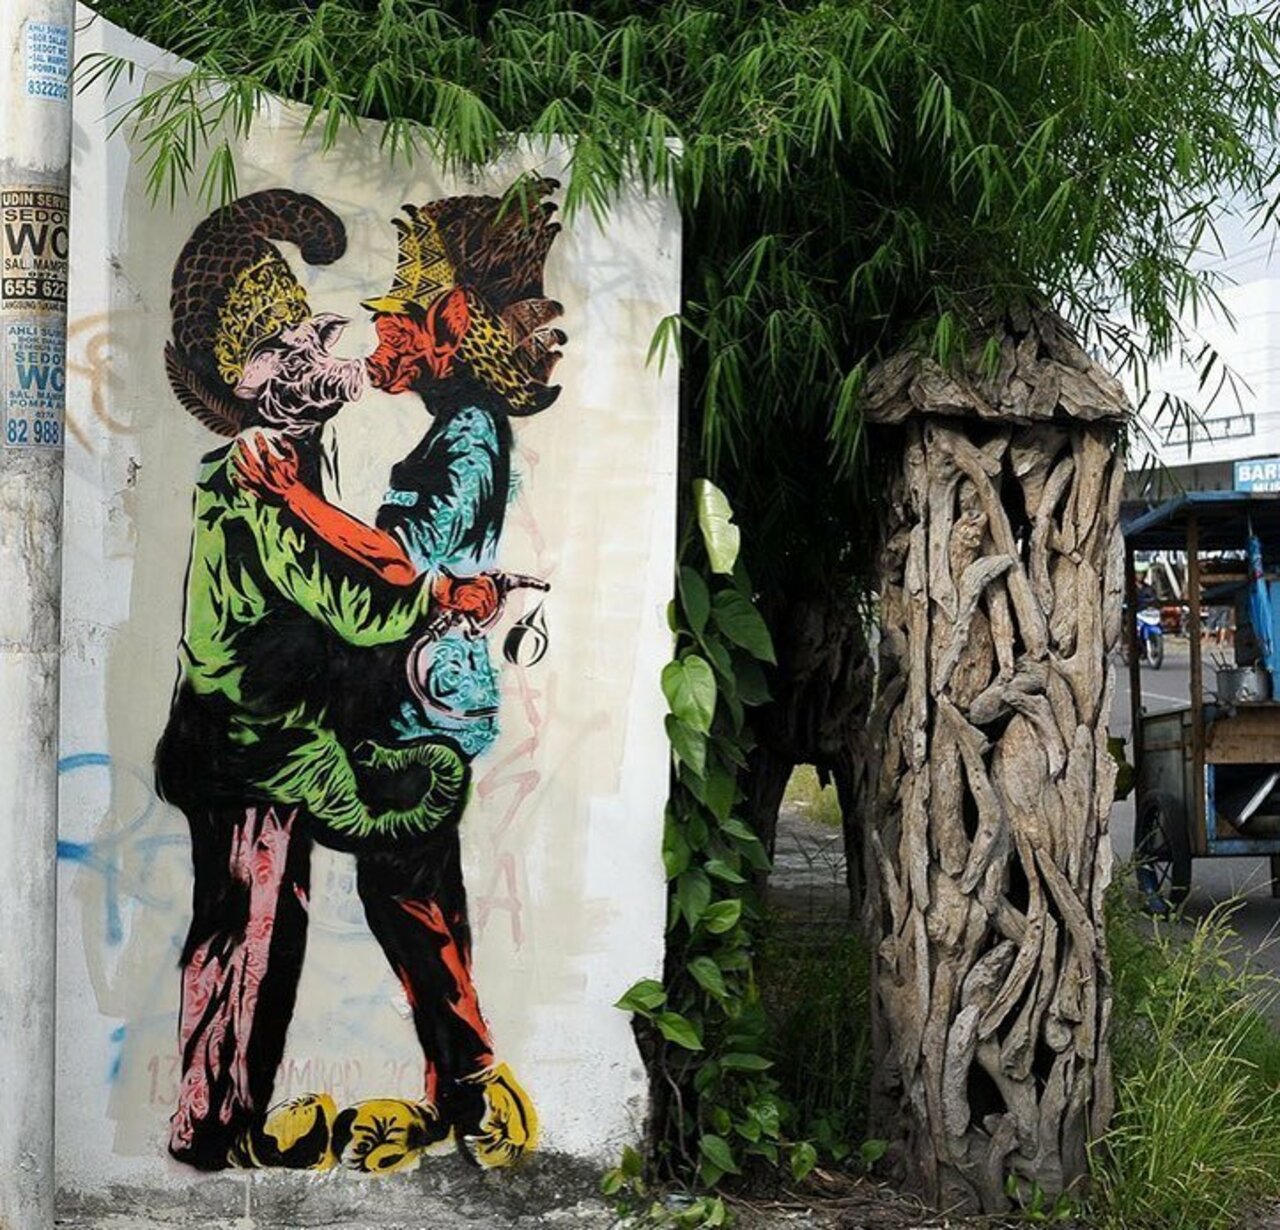 Stencil work by @anagard_stencil#globalstreetart #yogyakarta #stencil #streetart #bright http://globalstreetart.com/anagard-art-stencil https://t.co/8RV3ZXdBd1